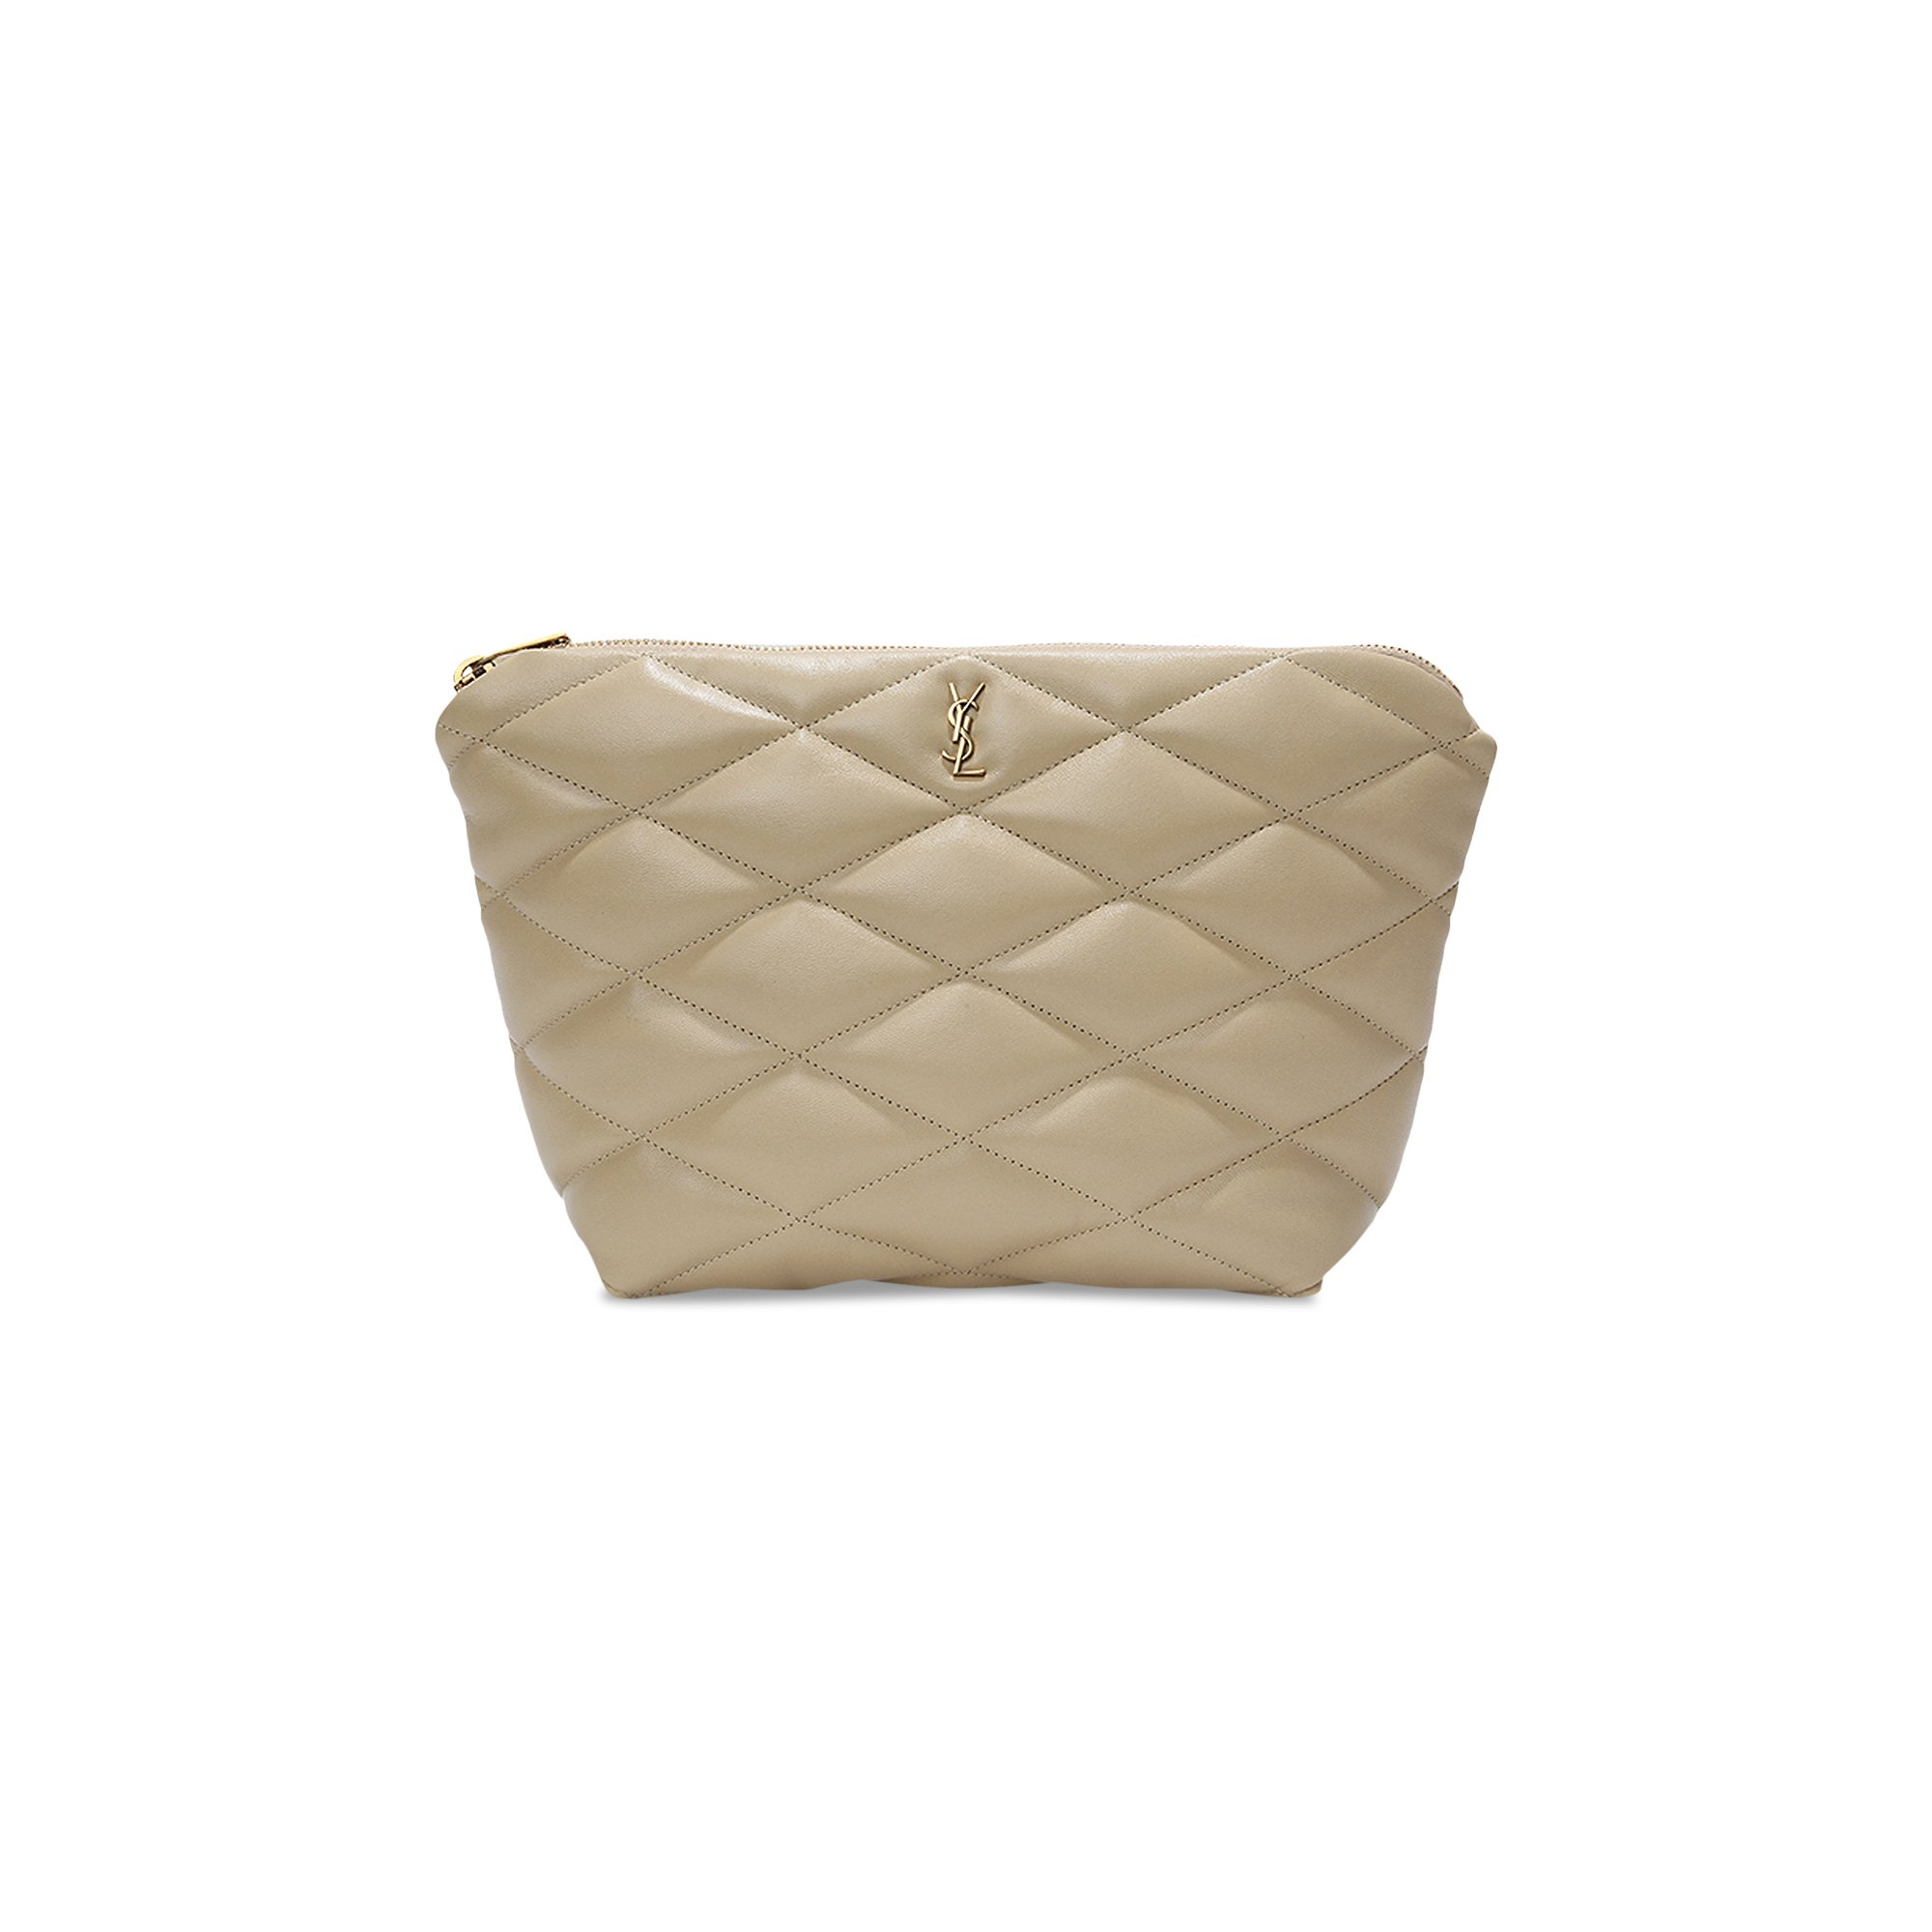 Buy Saint Laurent Puffer Small Chain Bag 'Avorio' - 696779 1EL07 